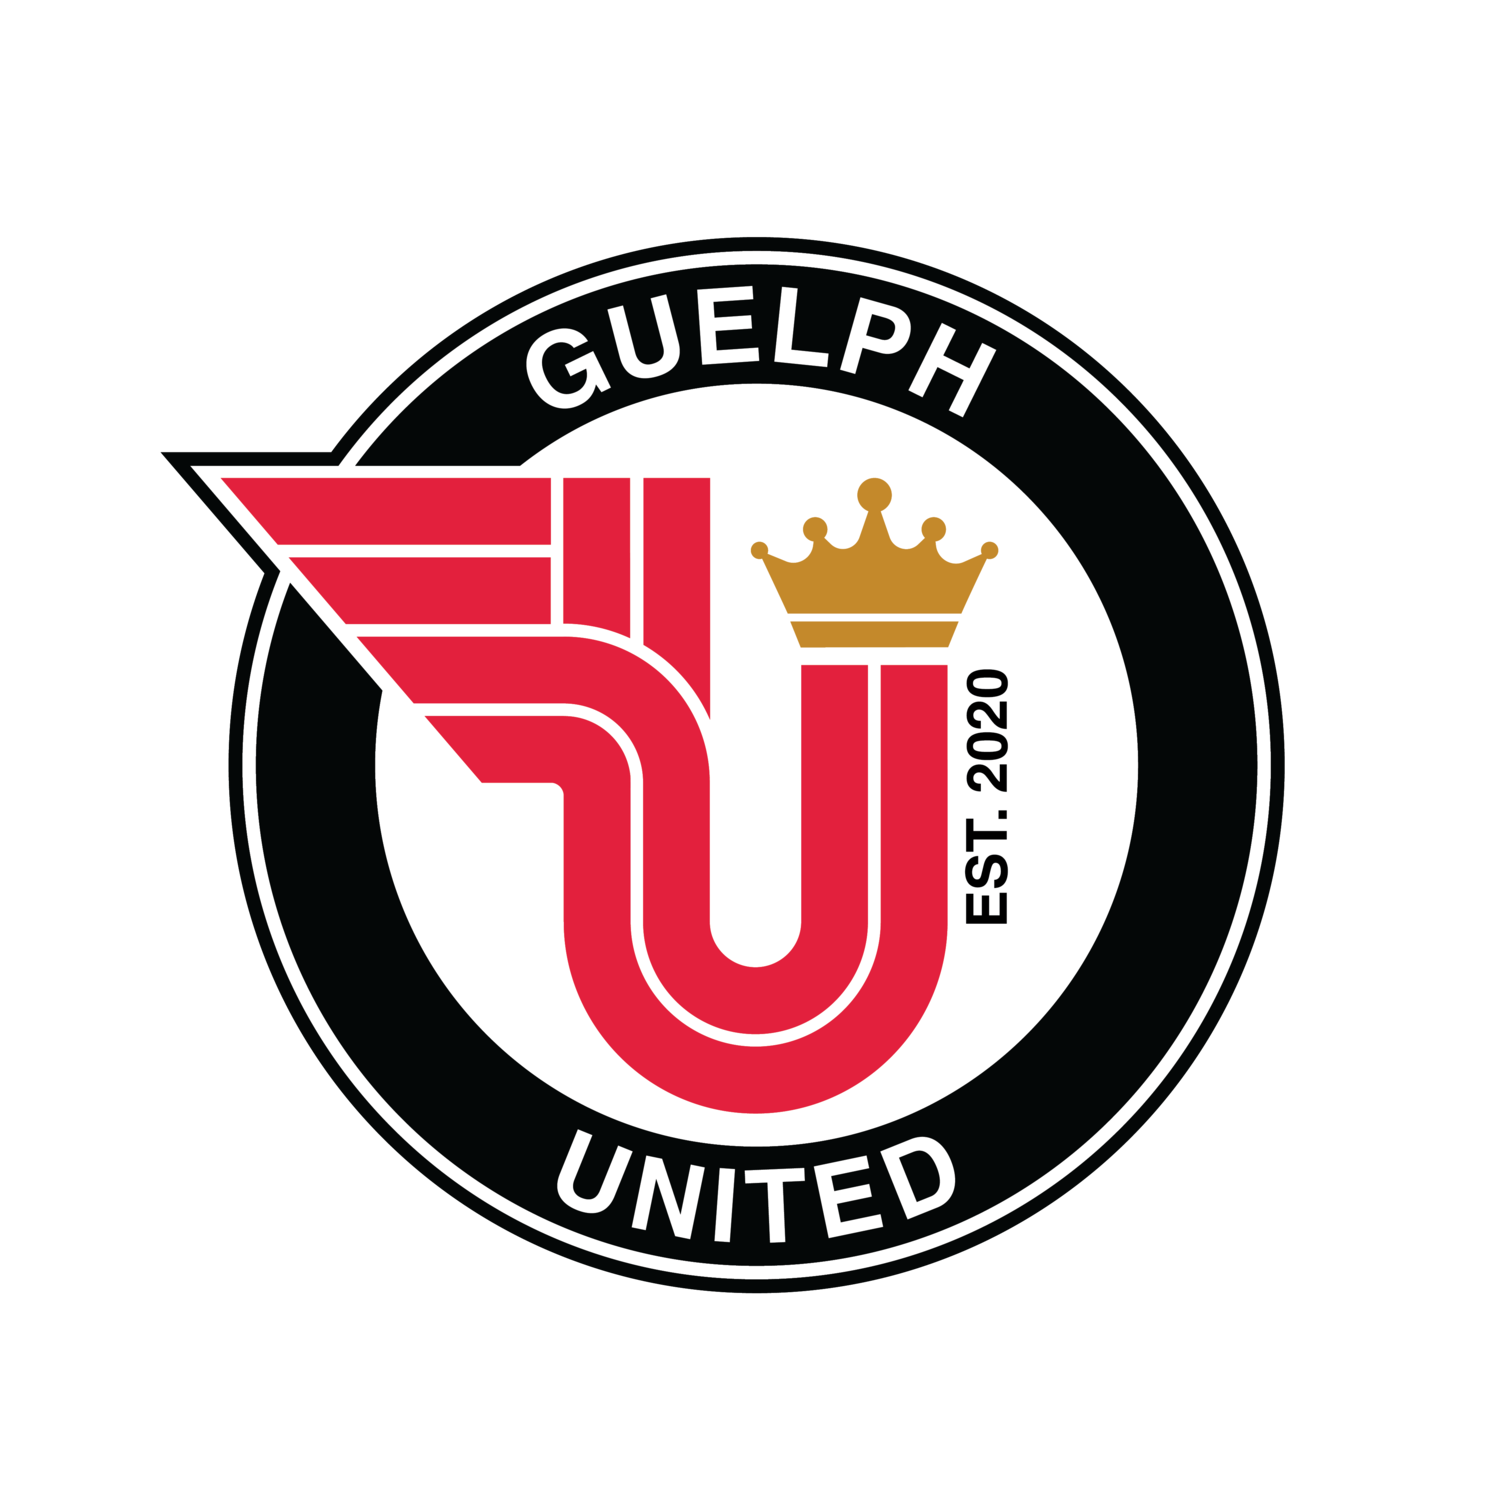 Guelph United logo